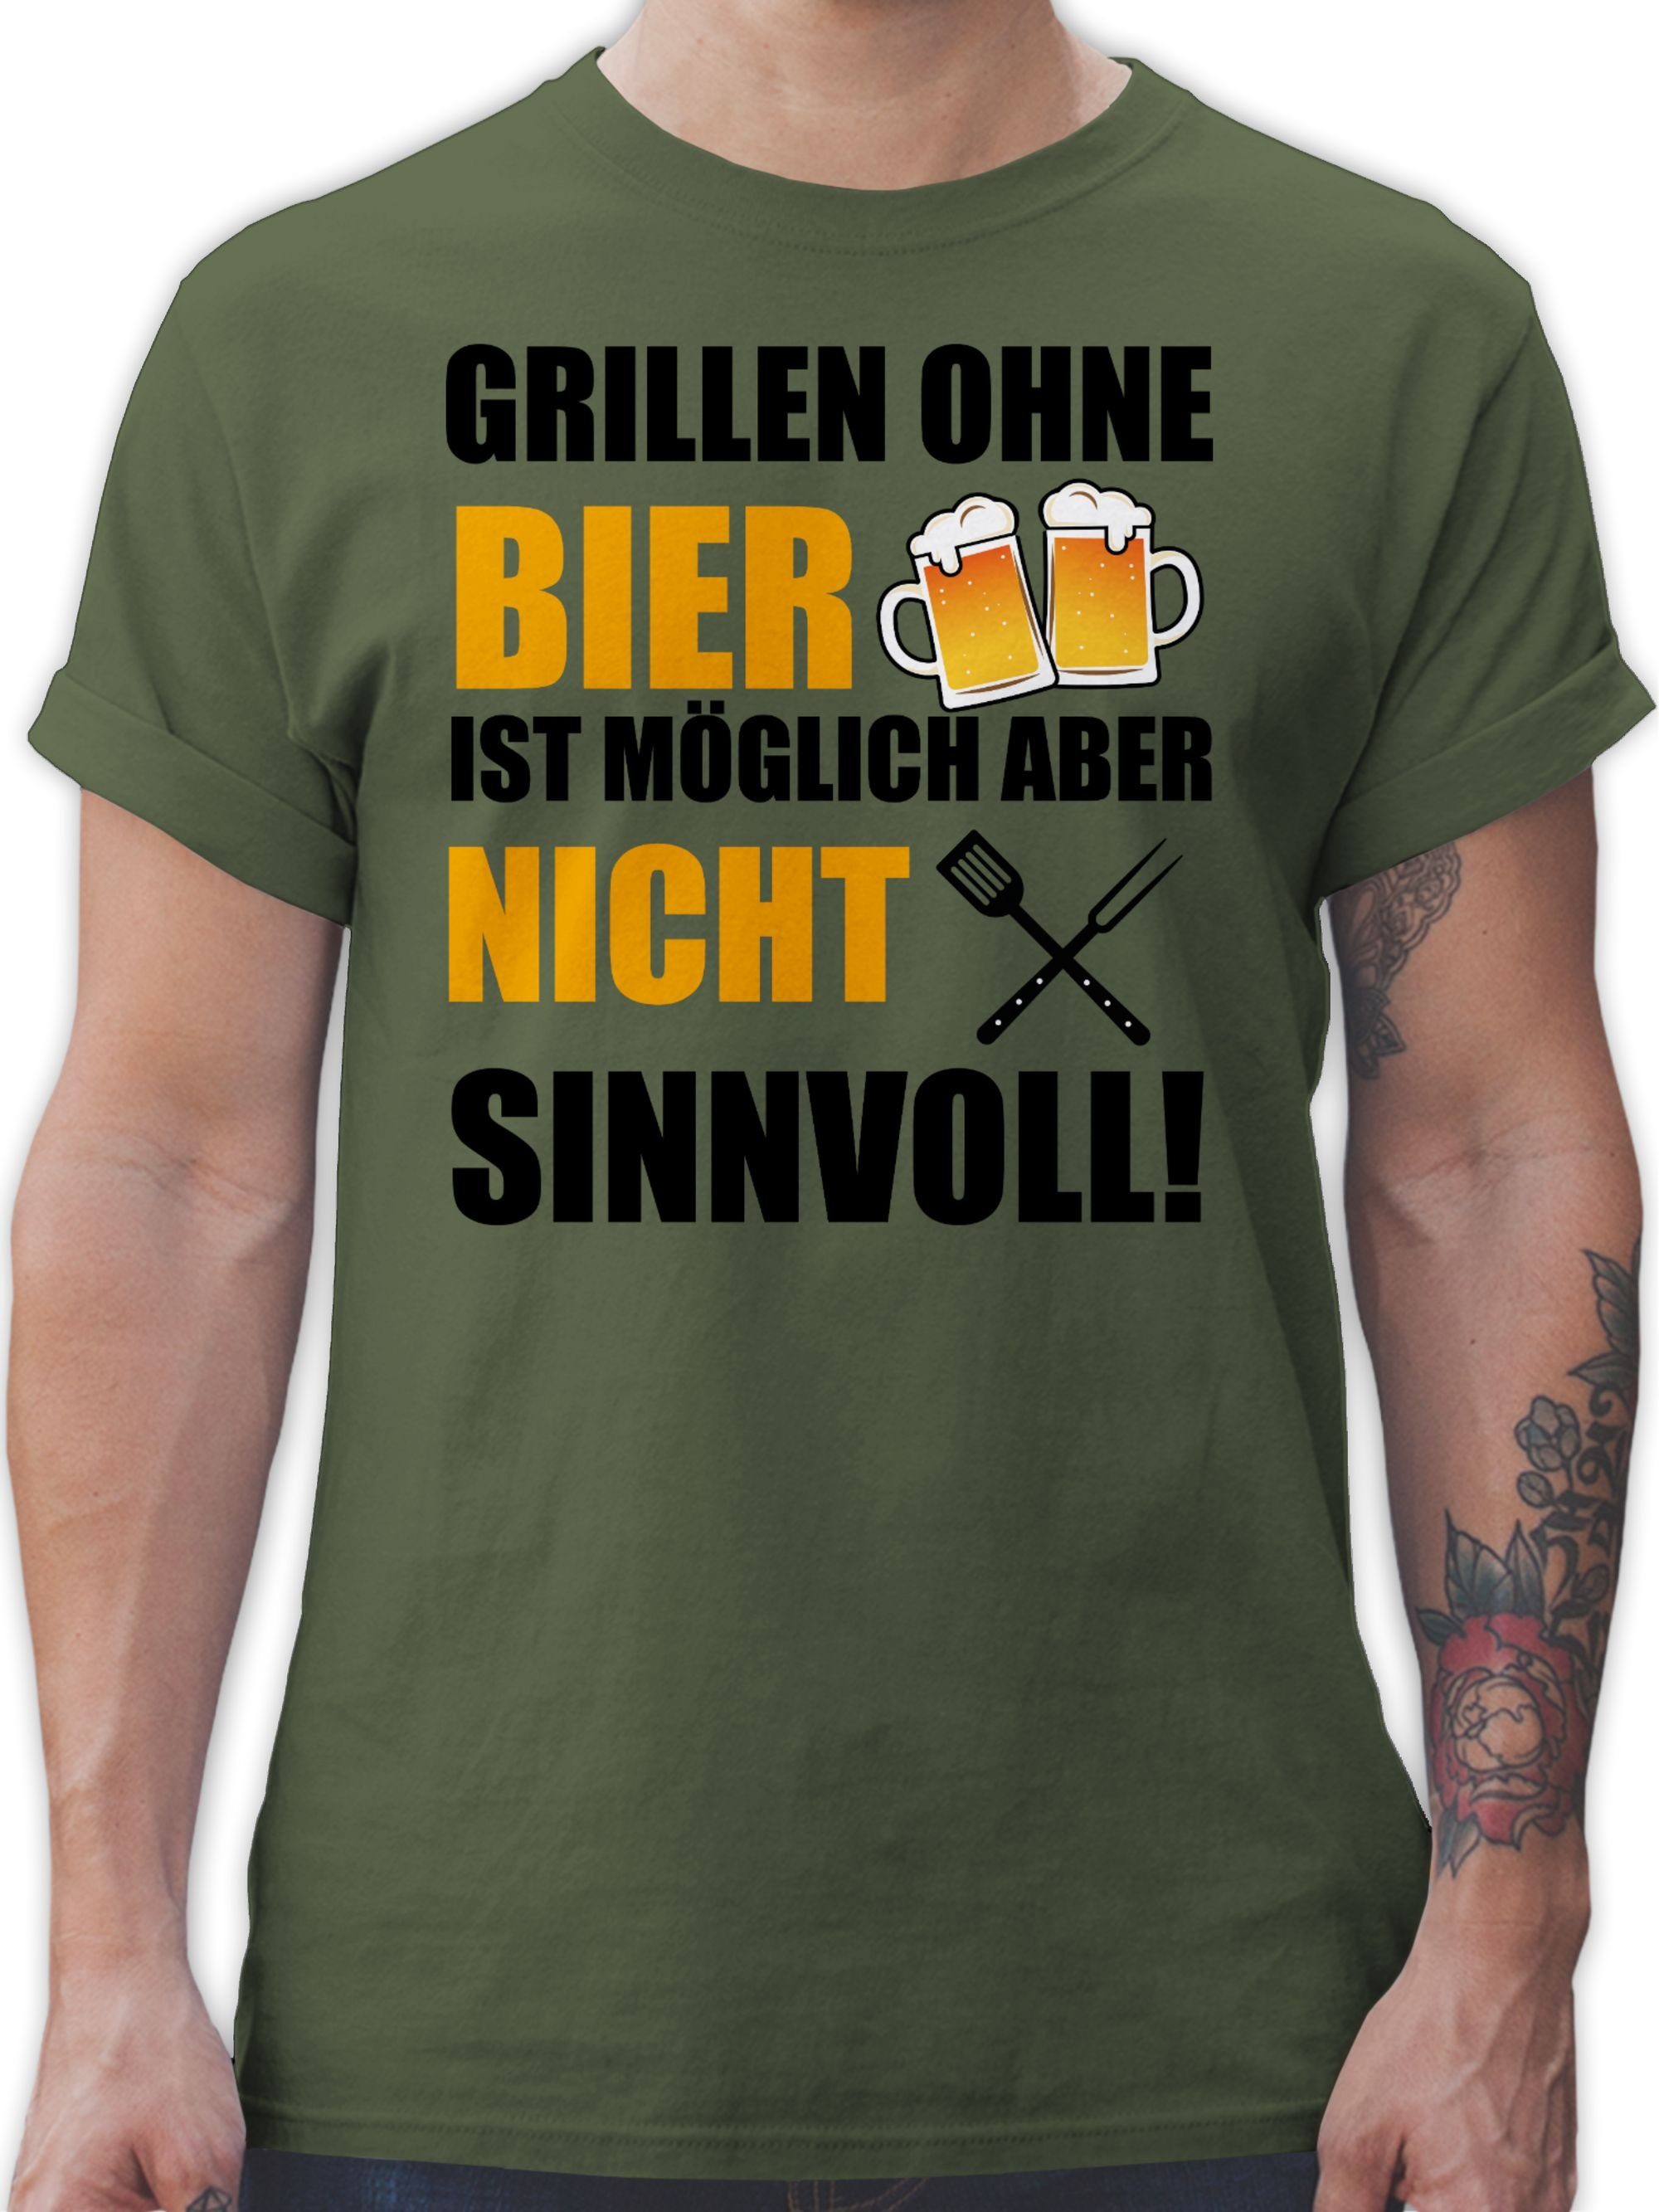 03 Shirtracer Grillen ohne T-Shirt Grillzubehör Bier & ist Grillen sinnvoll Army Grün Geschenk nicht